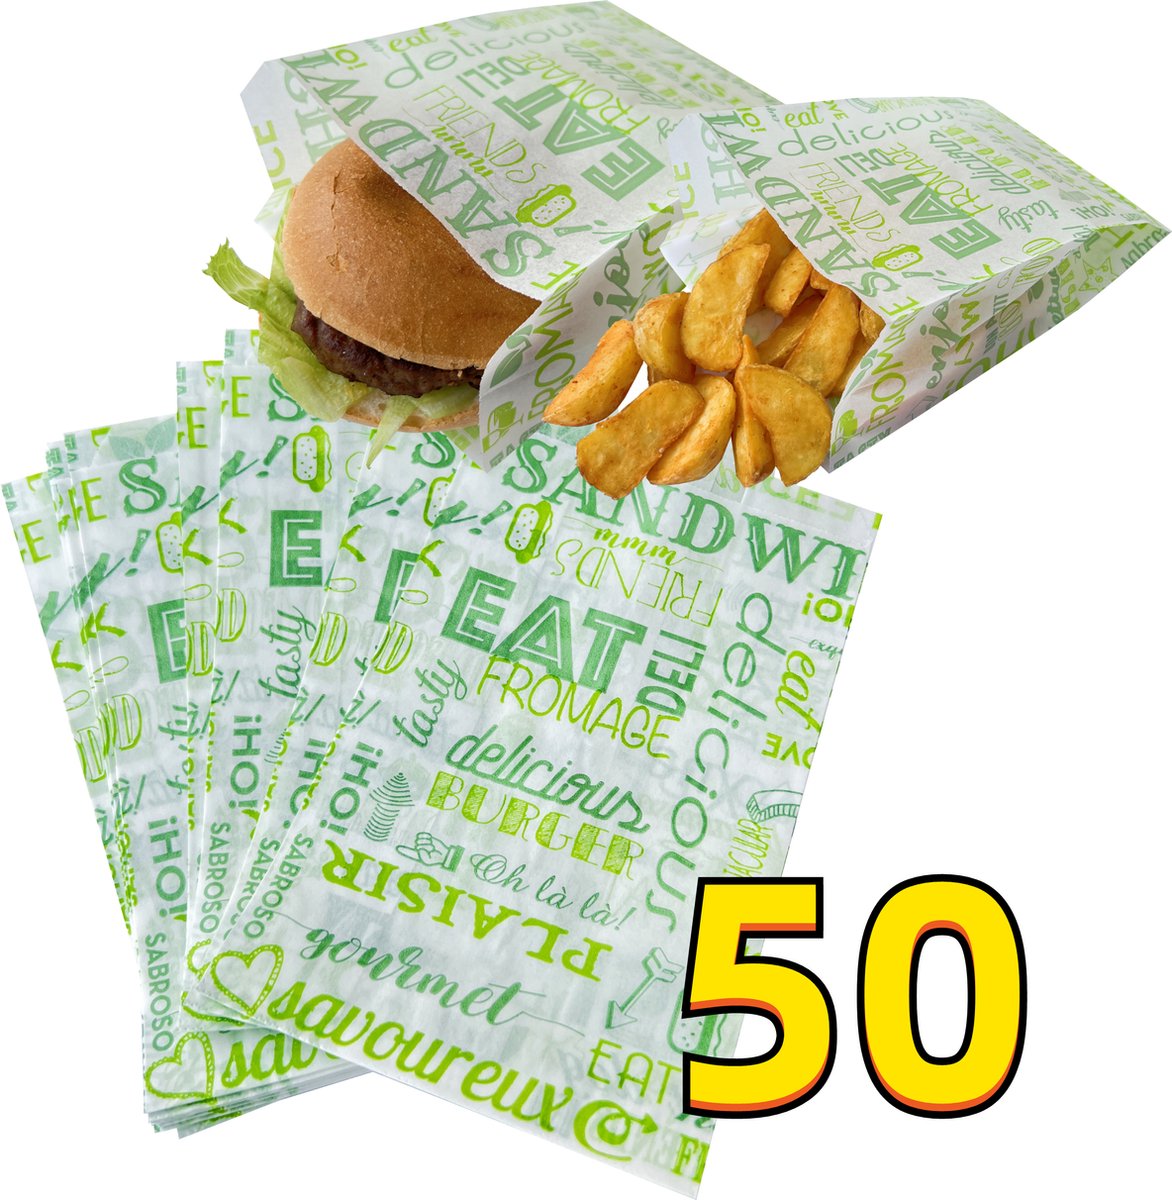 Rainbecom - 50 Stuks - Hamburger Zakje Papier - Vetvrij Papier - Papieren Zak voor Sandwiches - Groen